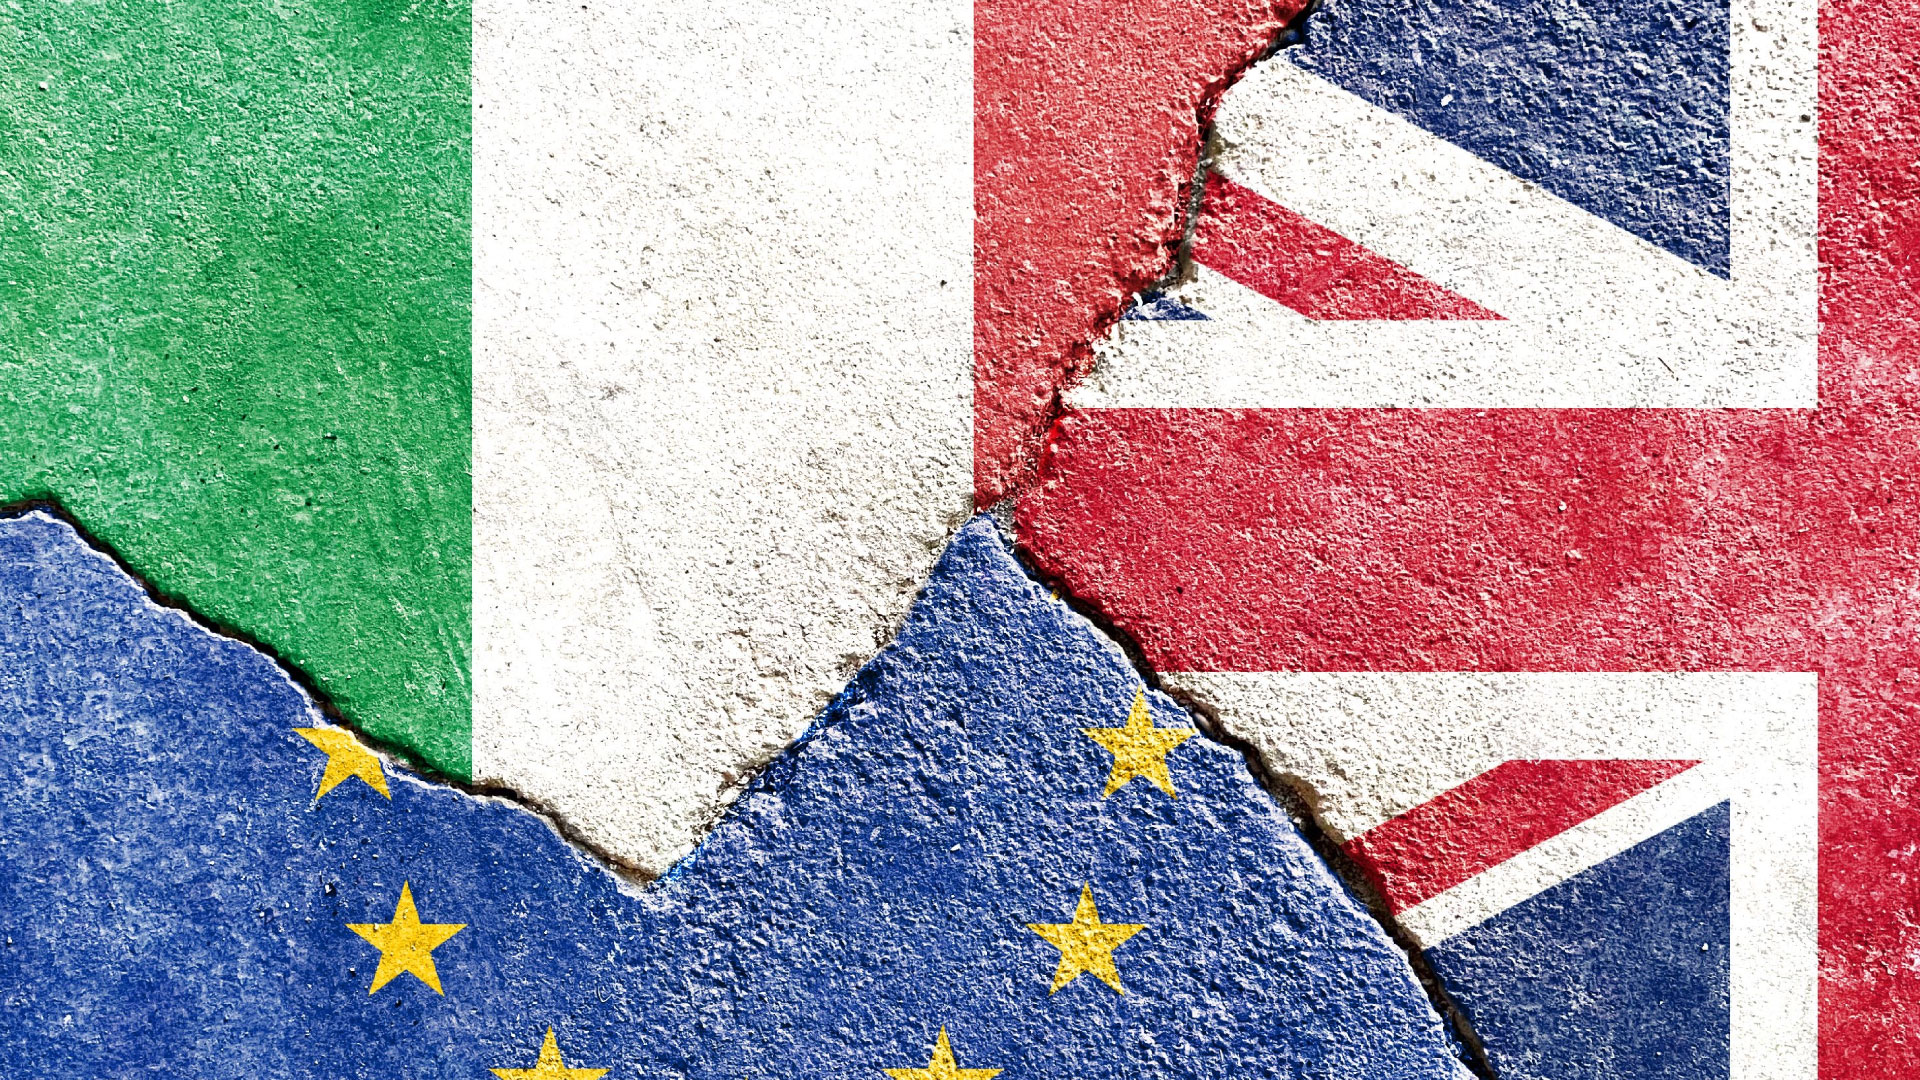 Italia-UE-UK